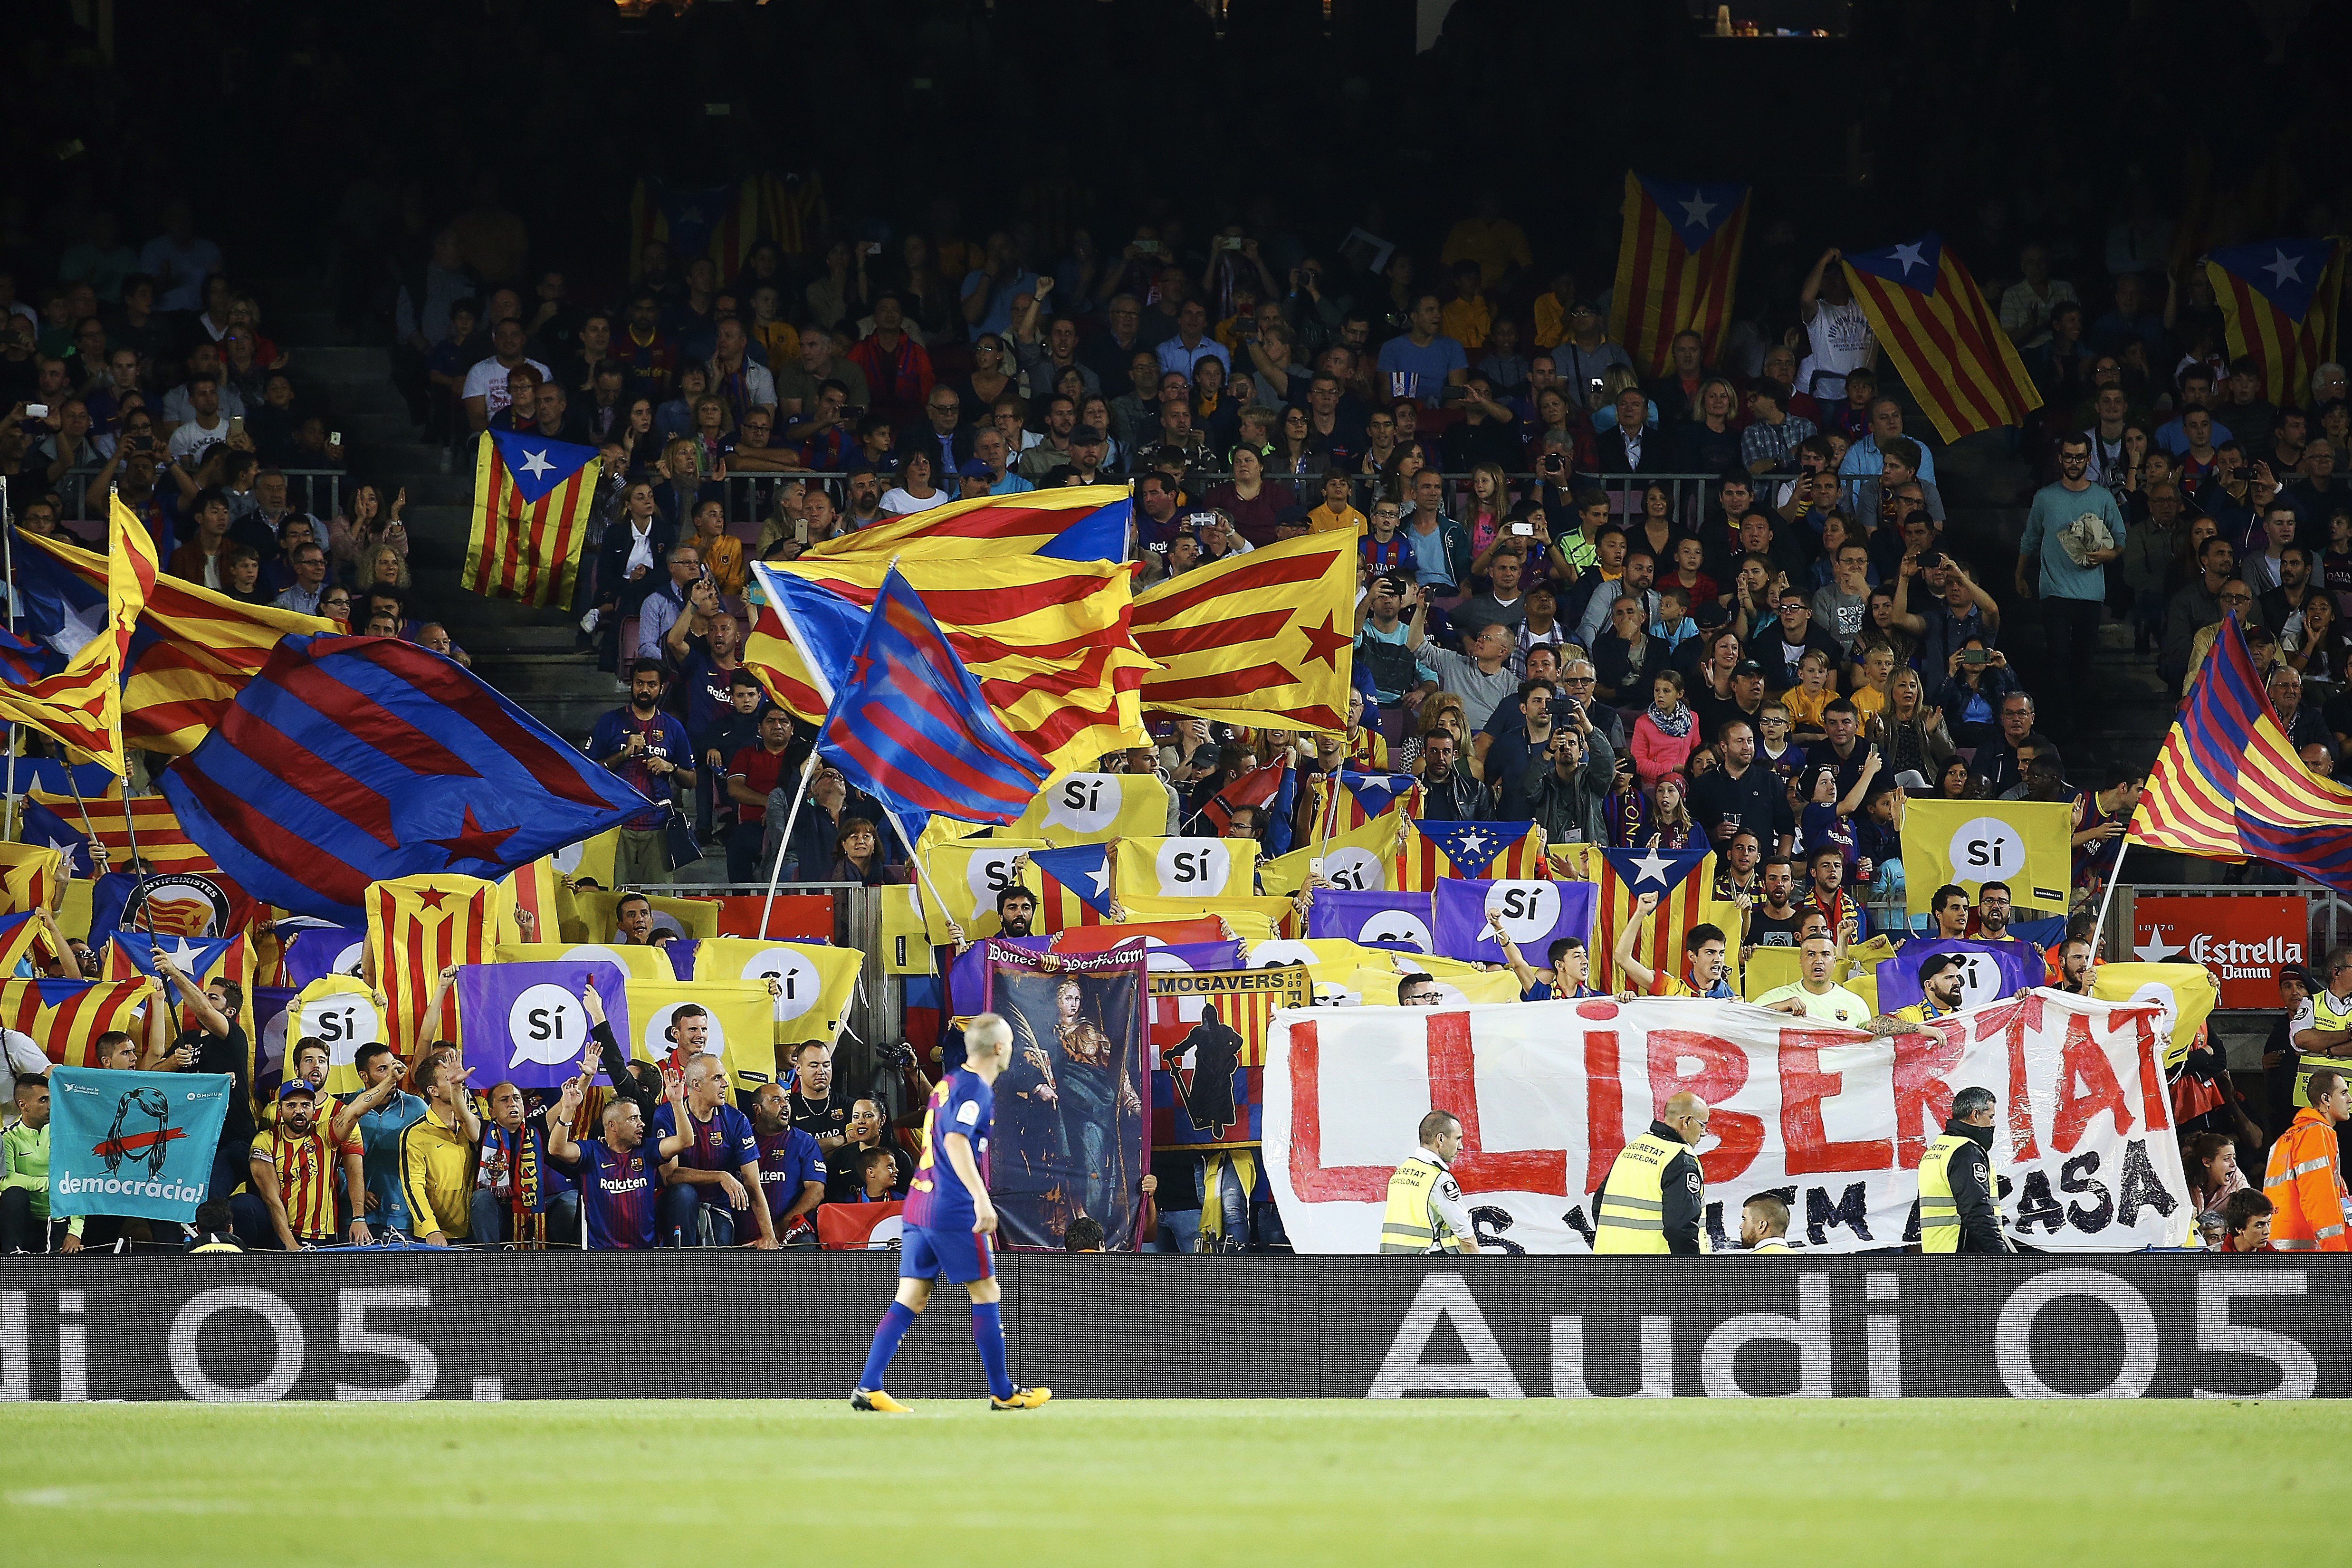 El Camp Nou volverá a pedir la libertad de los presos políticos en la Champions